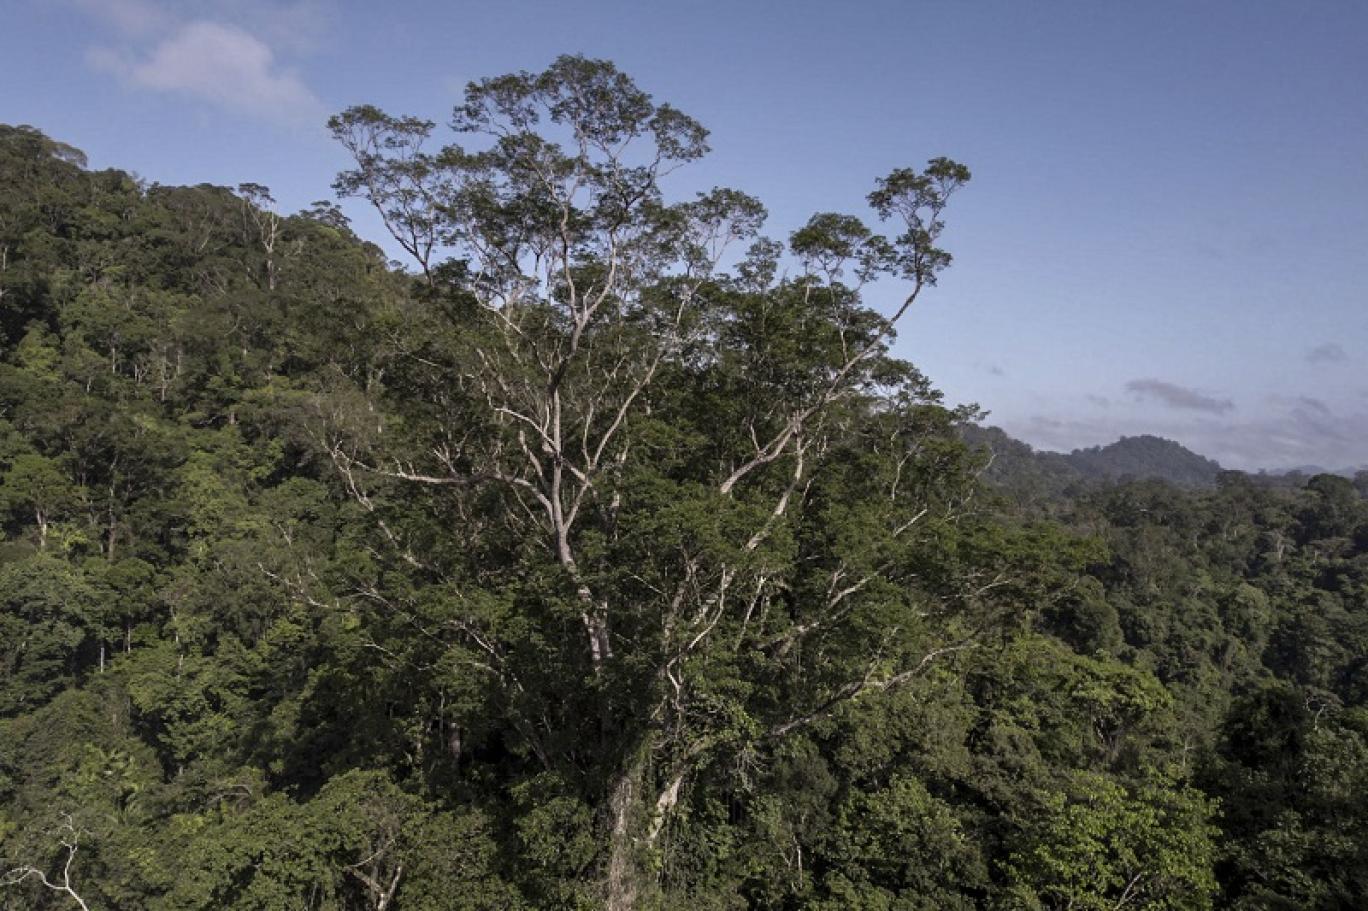 بعد رحلة شاقة العلماء يصلون إلى أطول شجرة في الأمازون